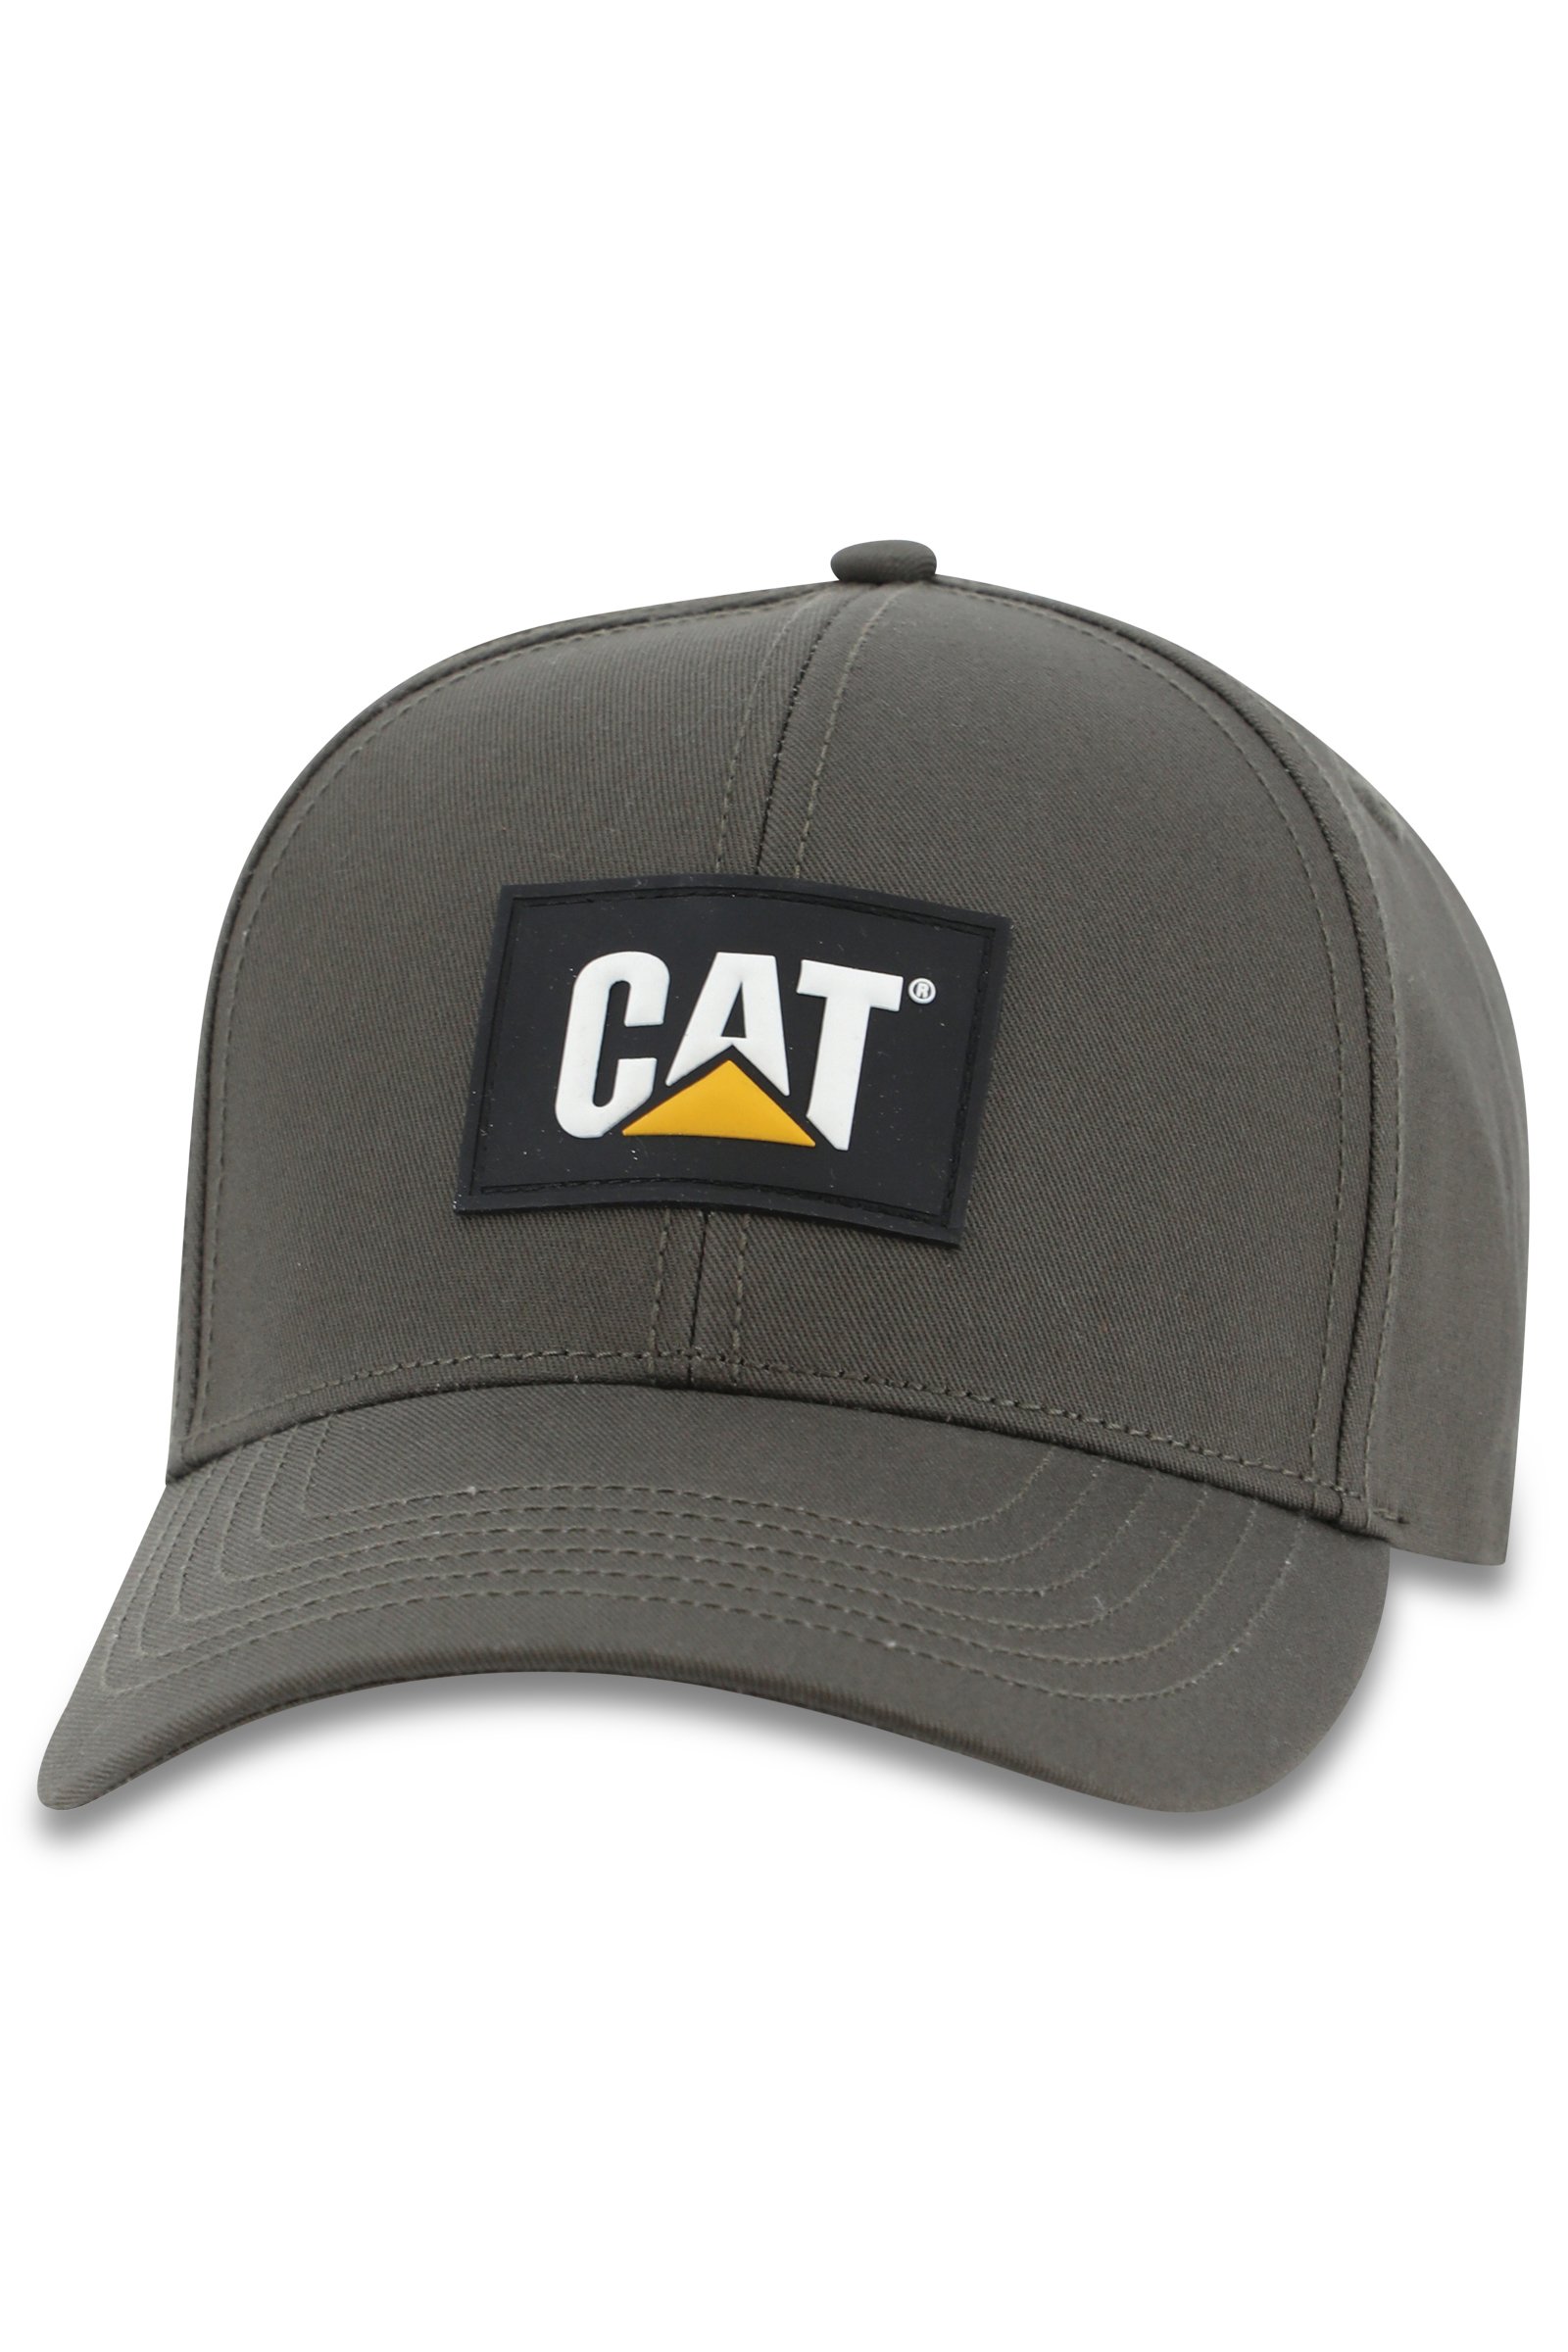 CAT PATCH HAT